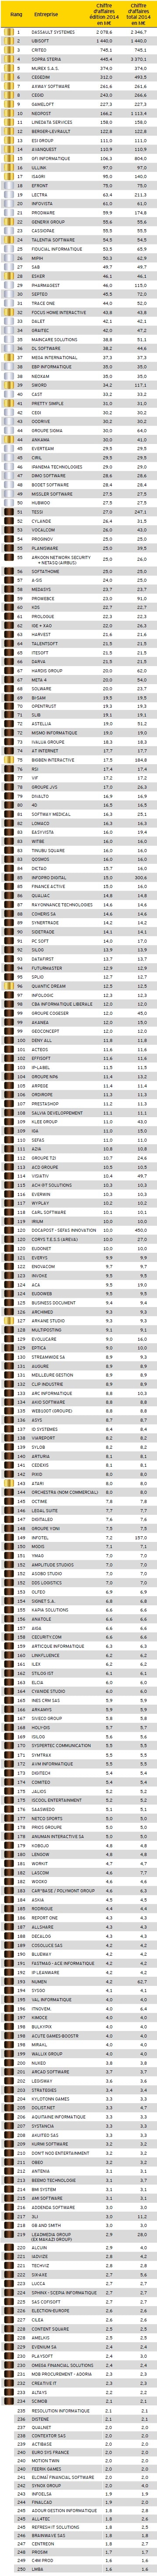 Top 250 éditeurs français 2015